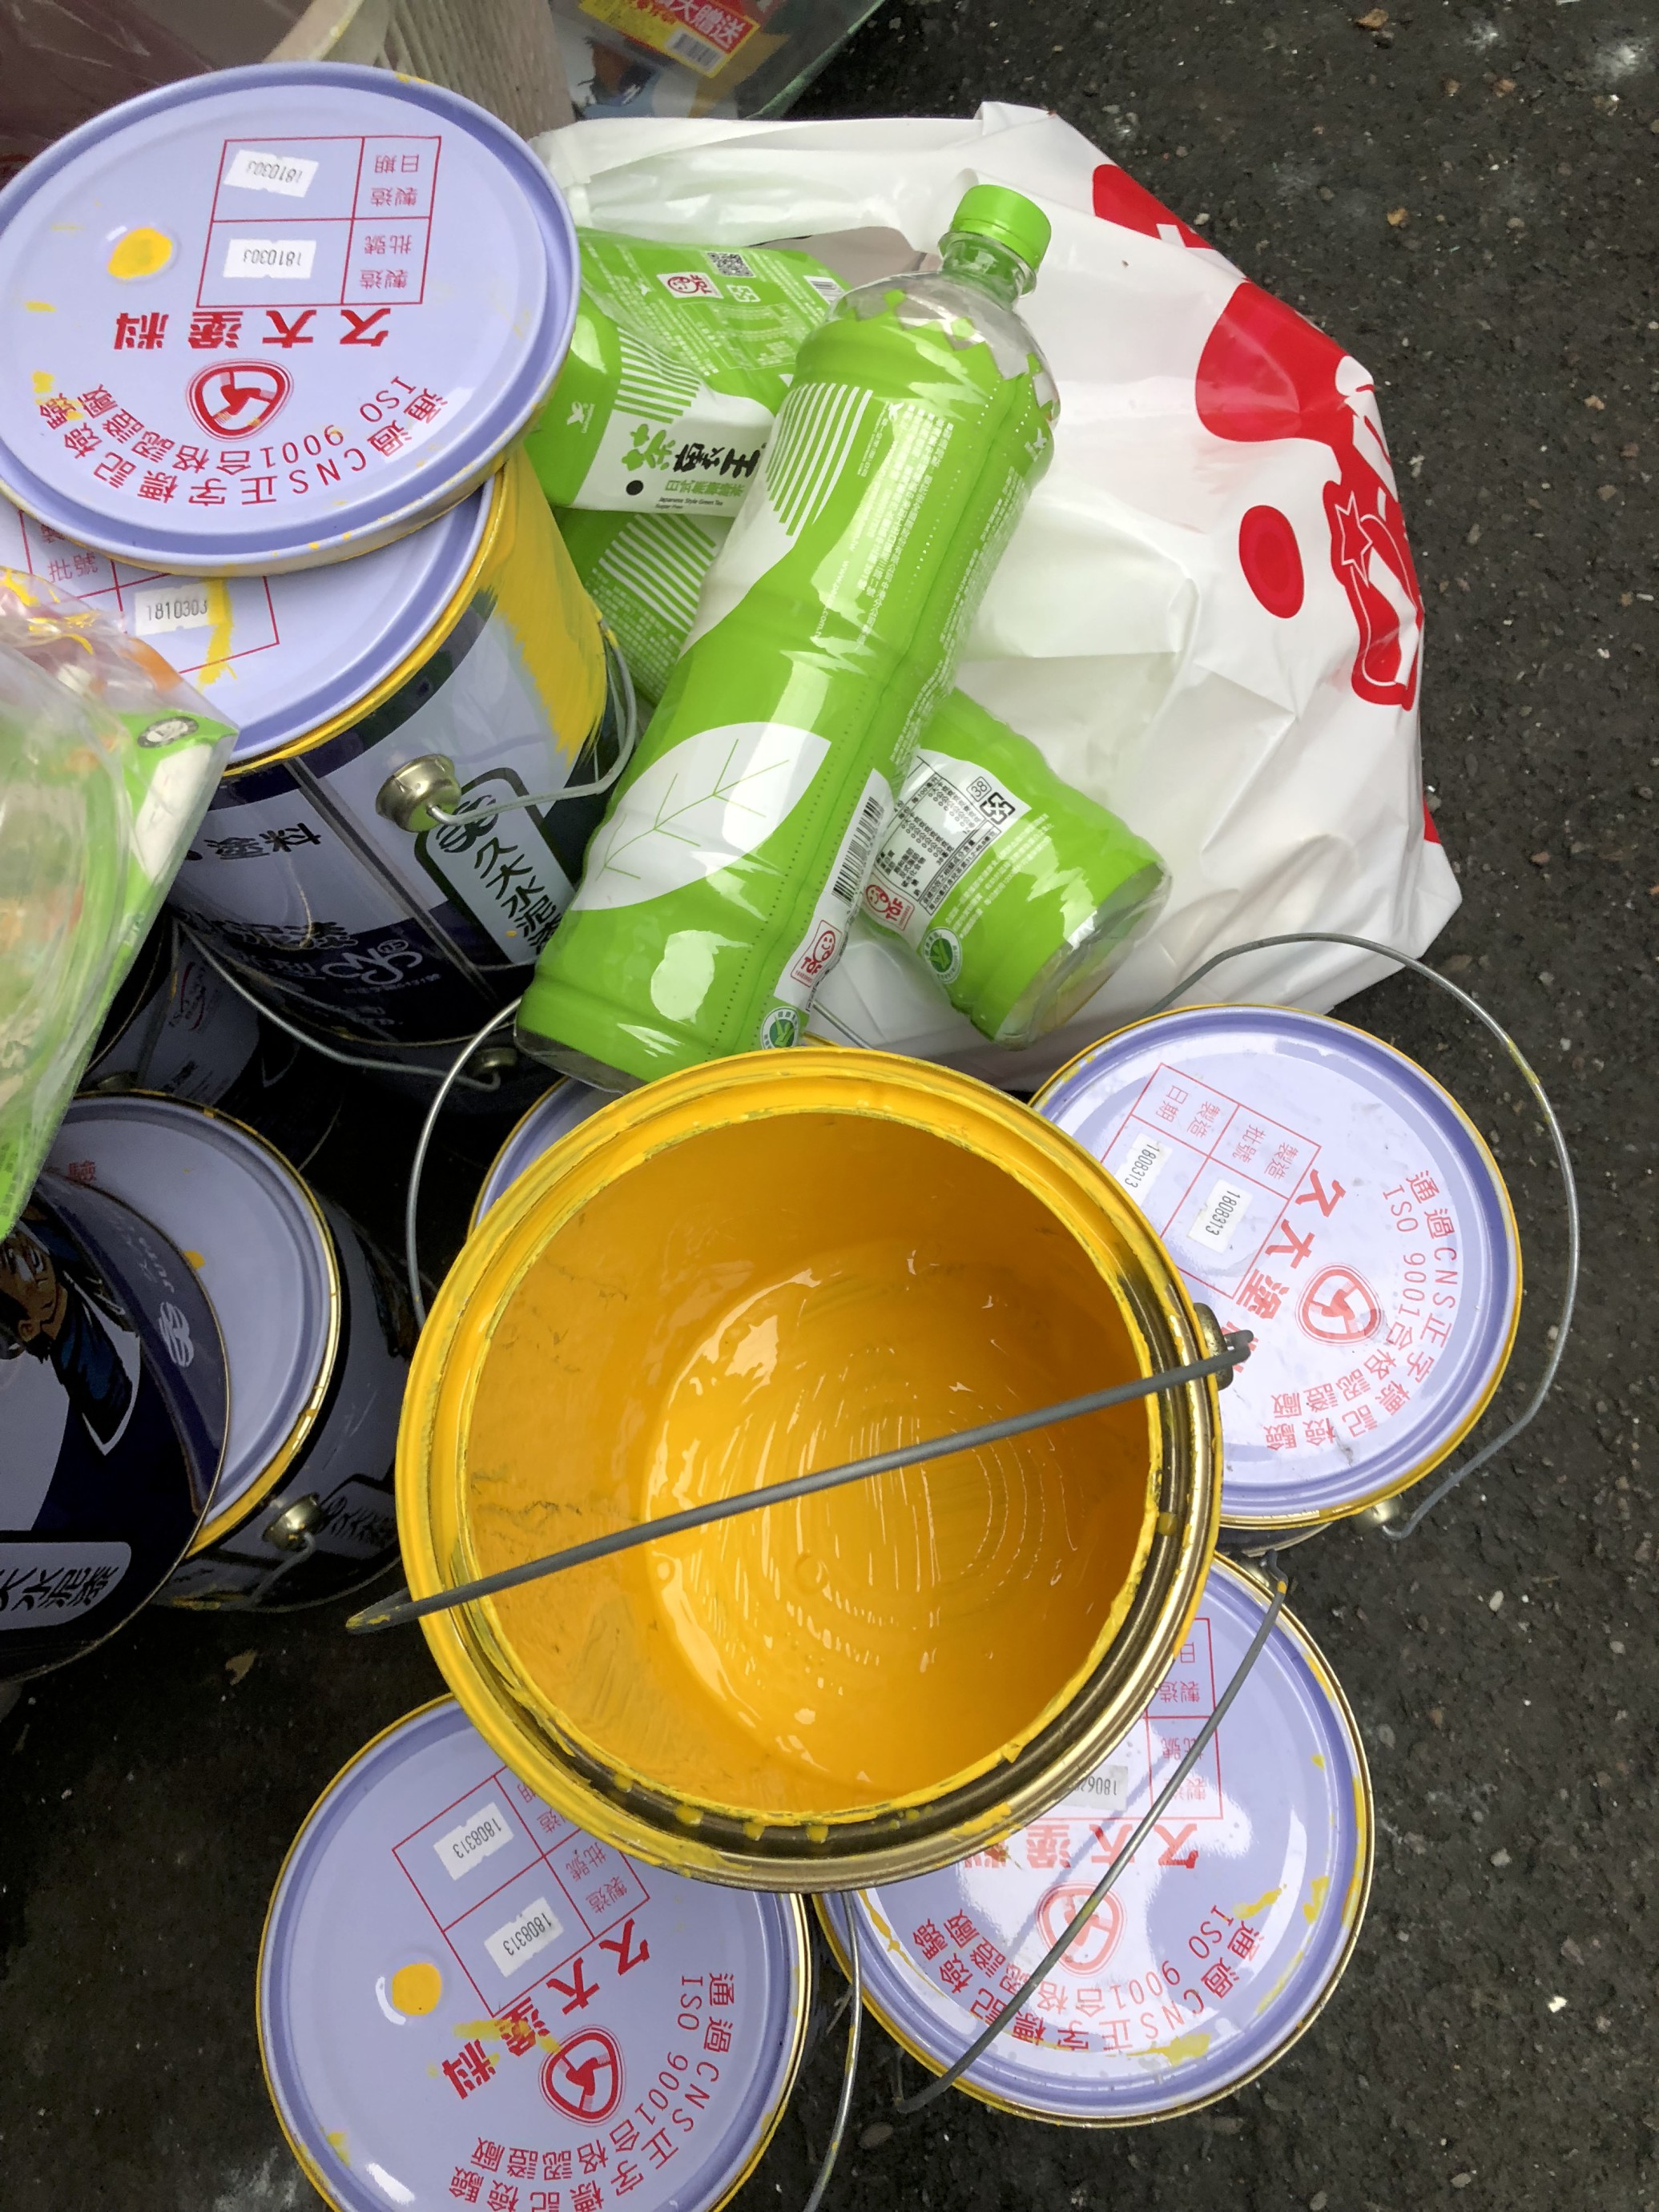 稽查員於捷運彩虹公寓大廈社區旁回收戶前發現黃色油漆空桶